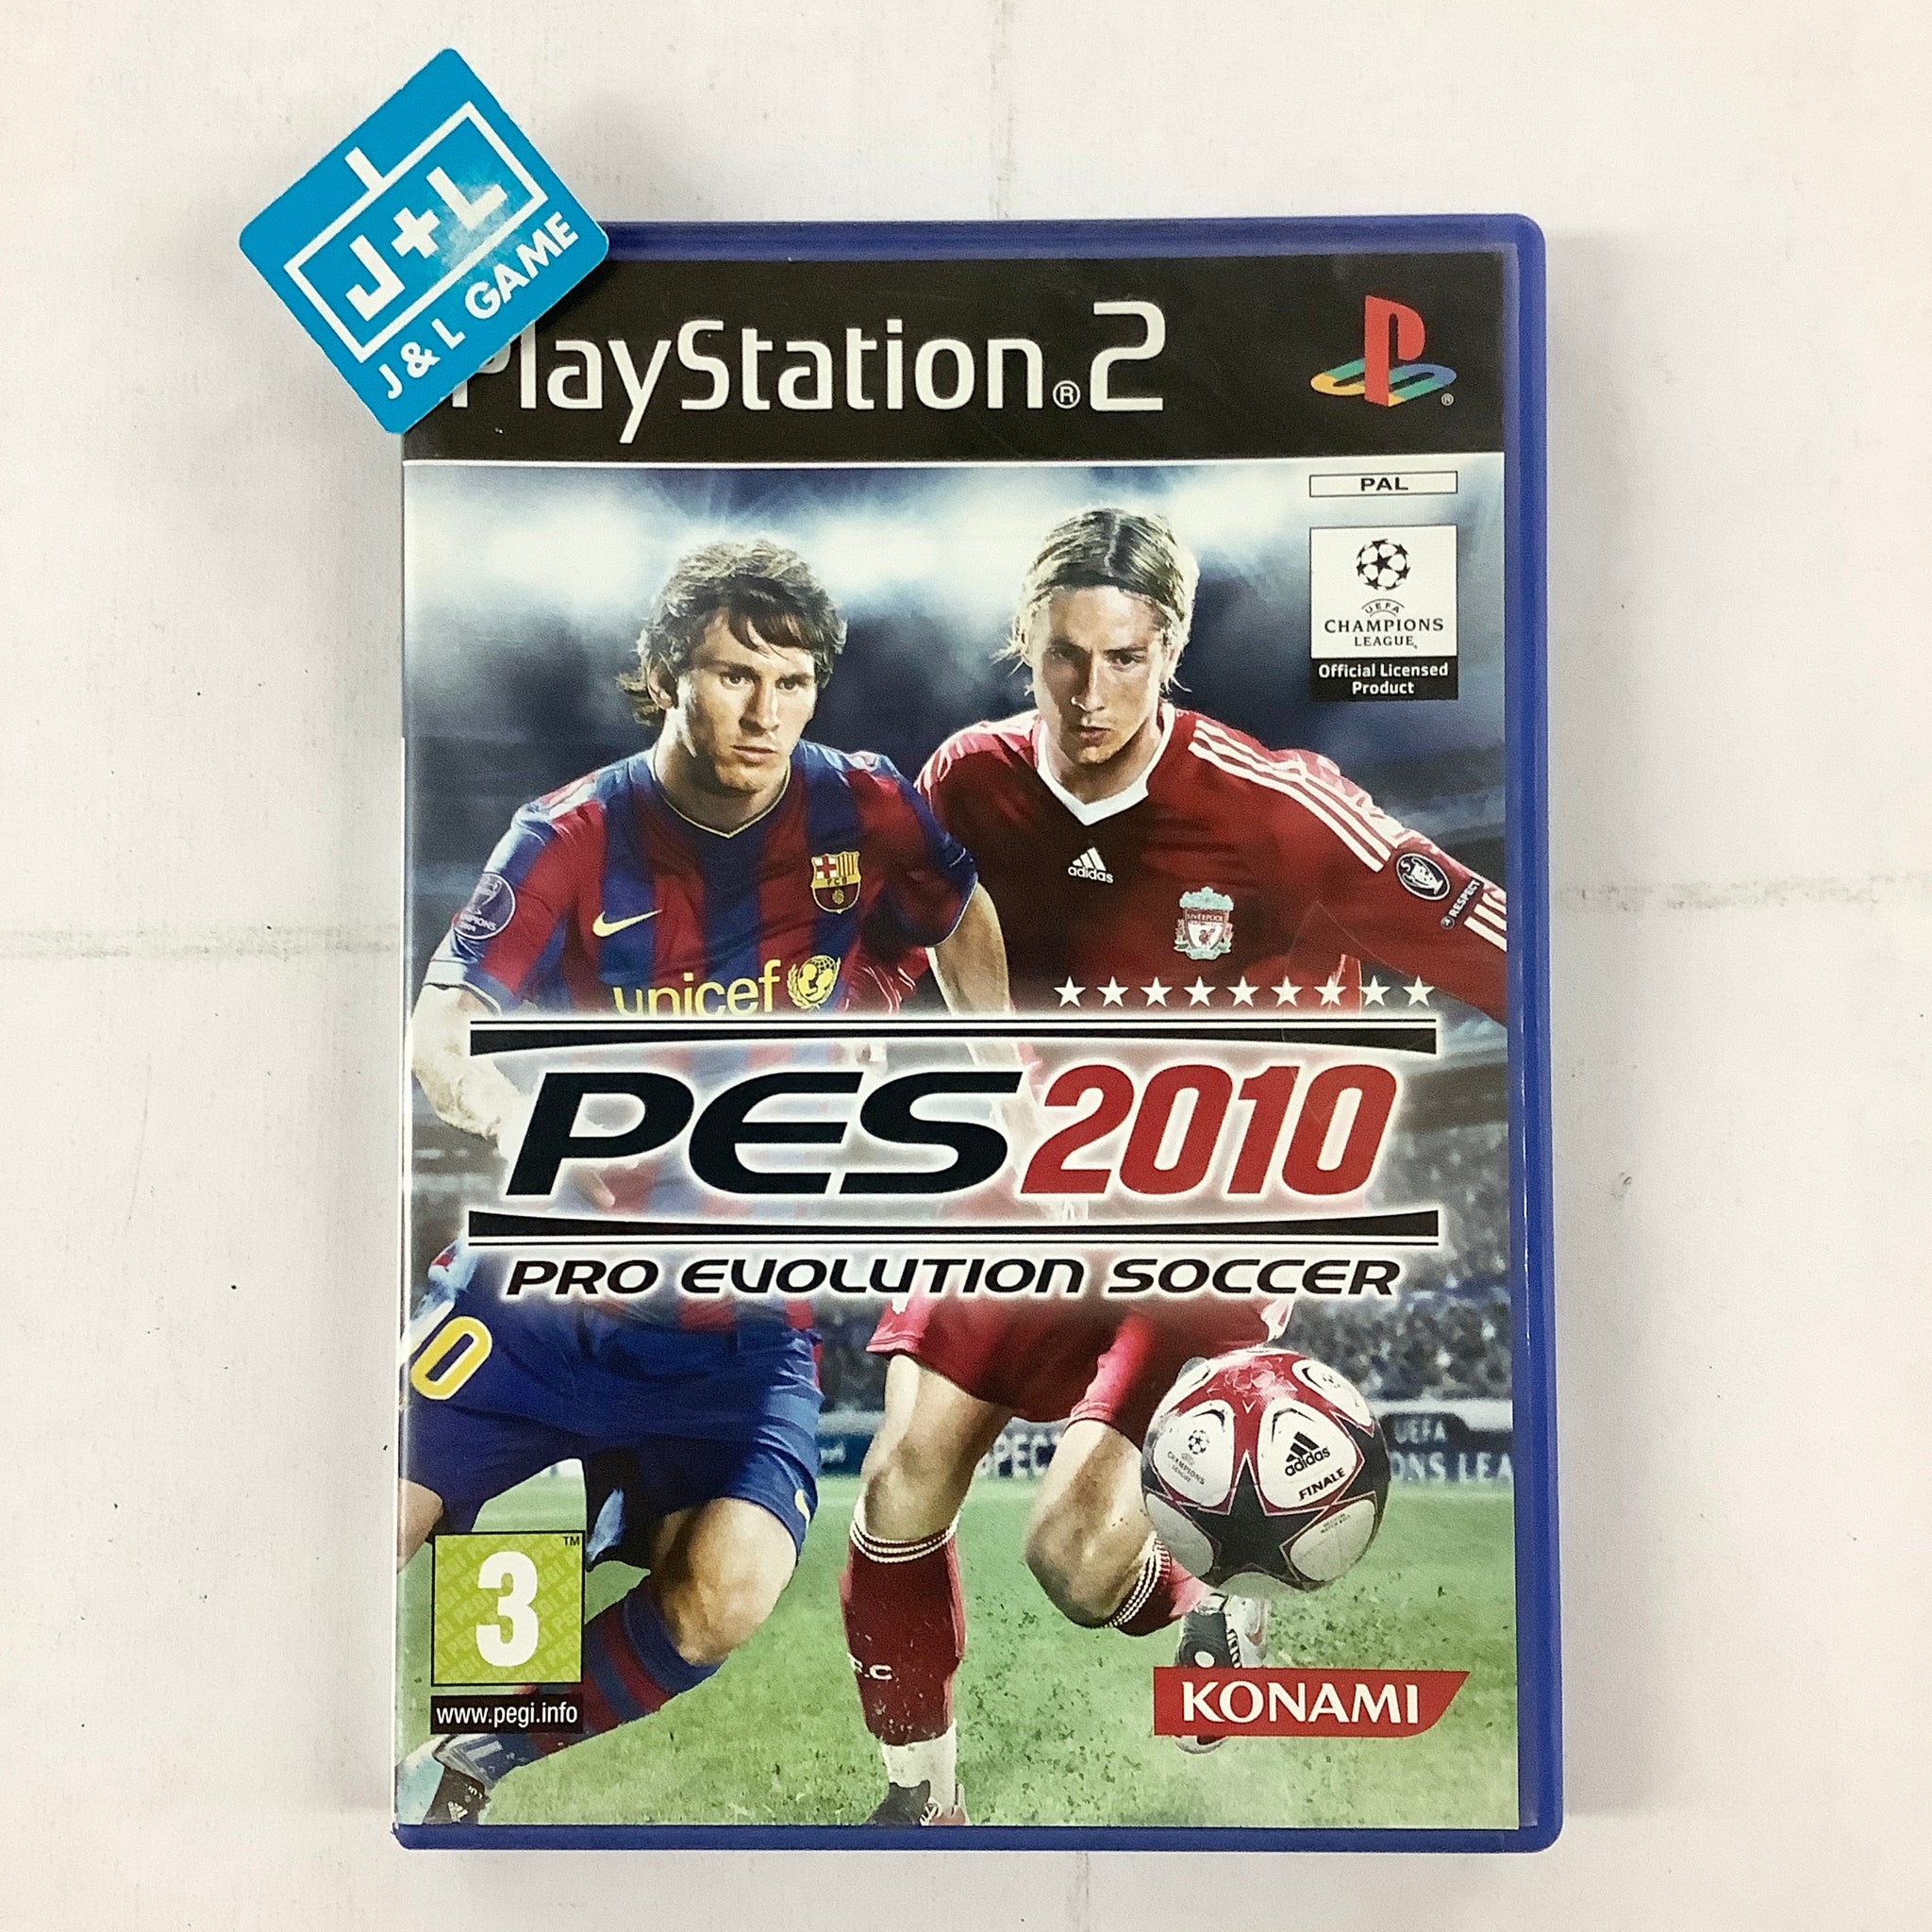 PES 2010 PS2 Vs PSP 